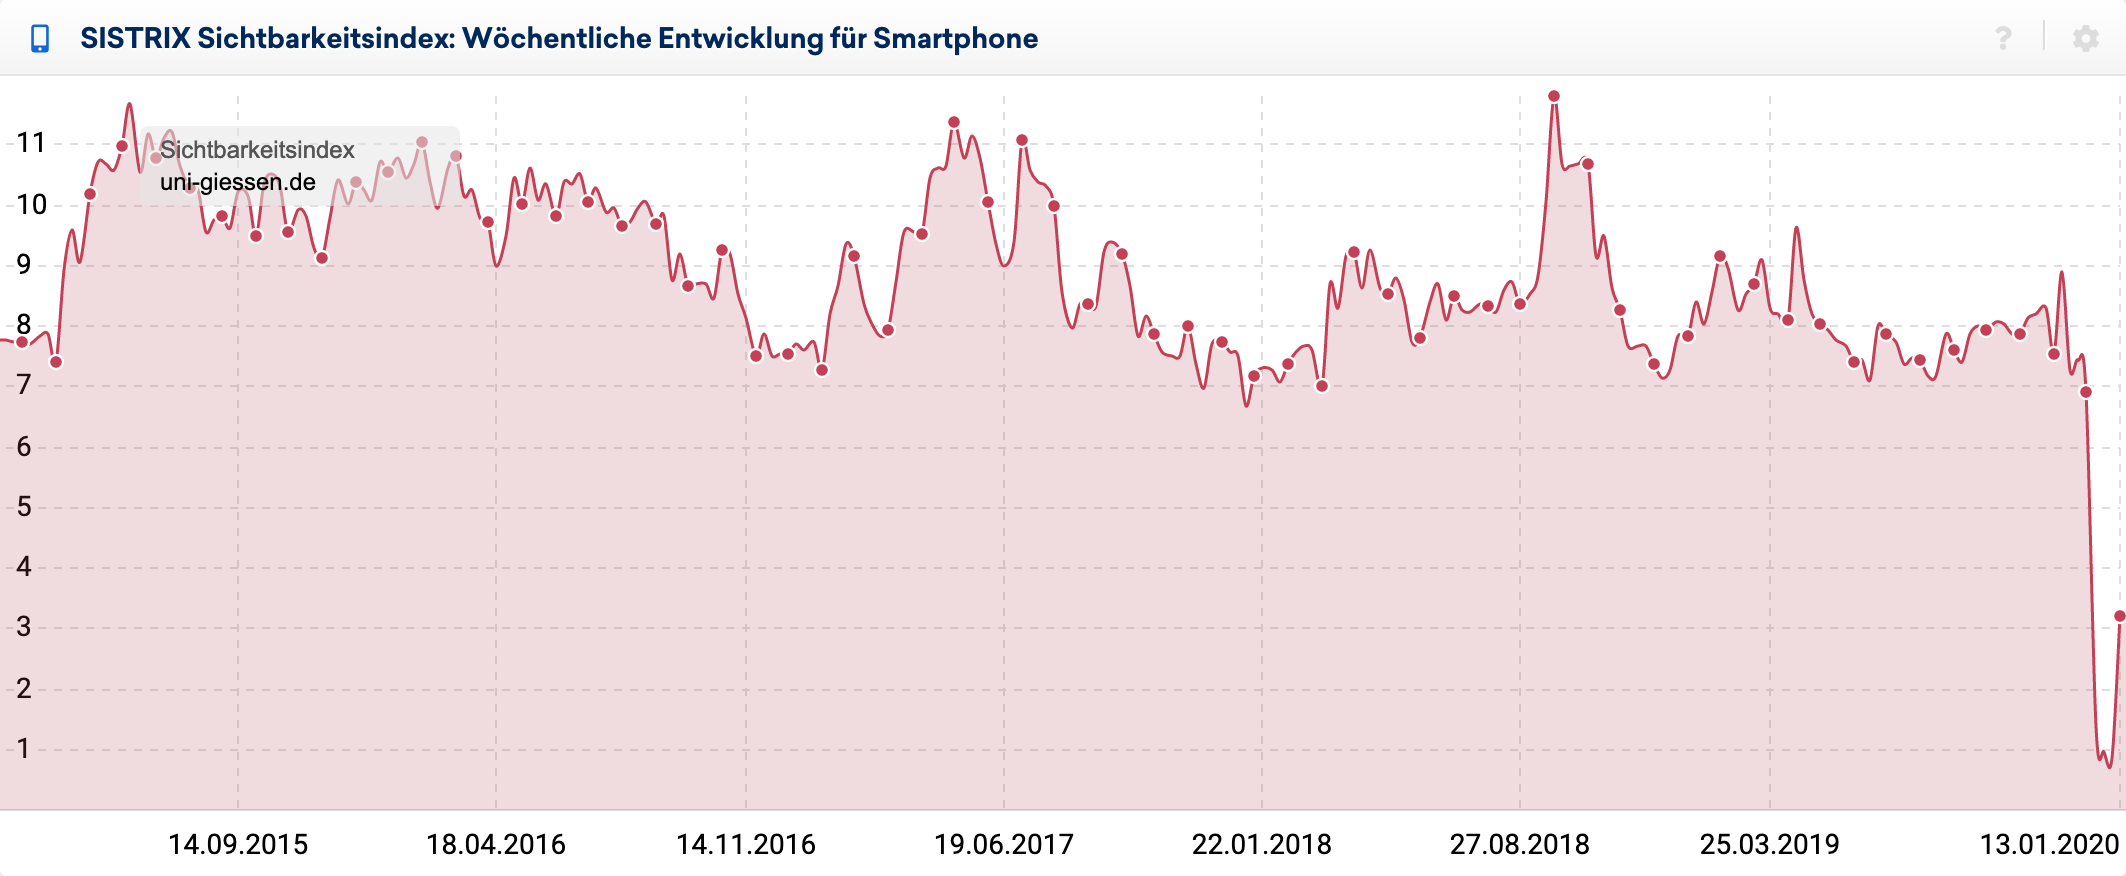 Mobiler Verlauf des SISTRIX Sichtbarkeitsindex für die Domain uni-giessen.de für Deutschland. Es zeigt sich ein starker Verlust im Dezember 2019.